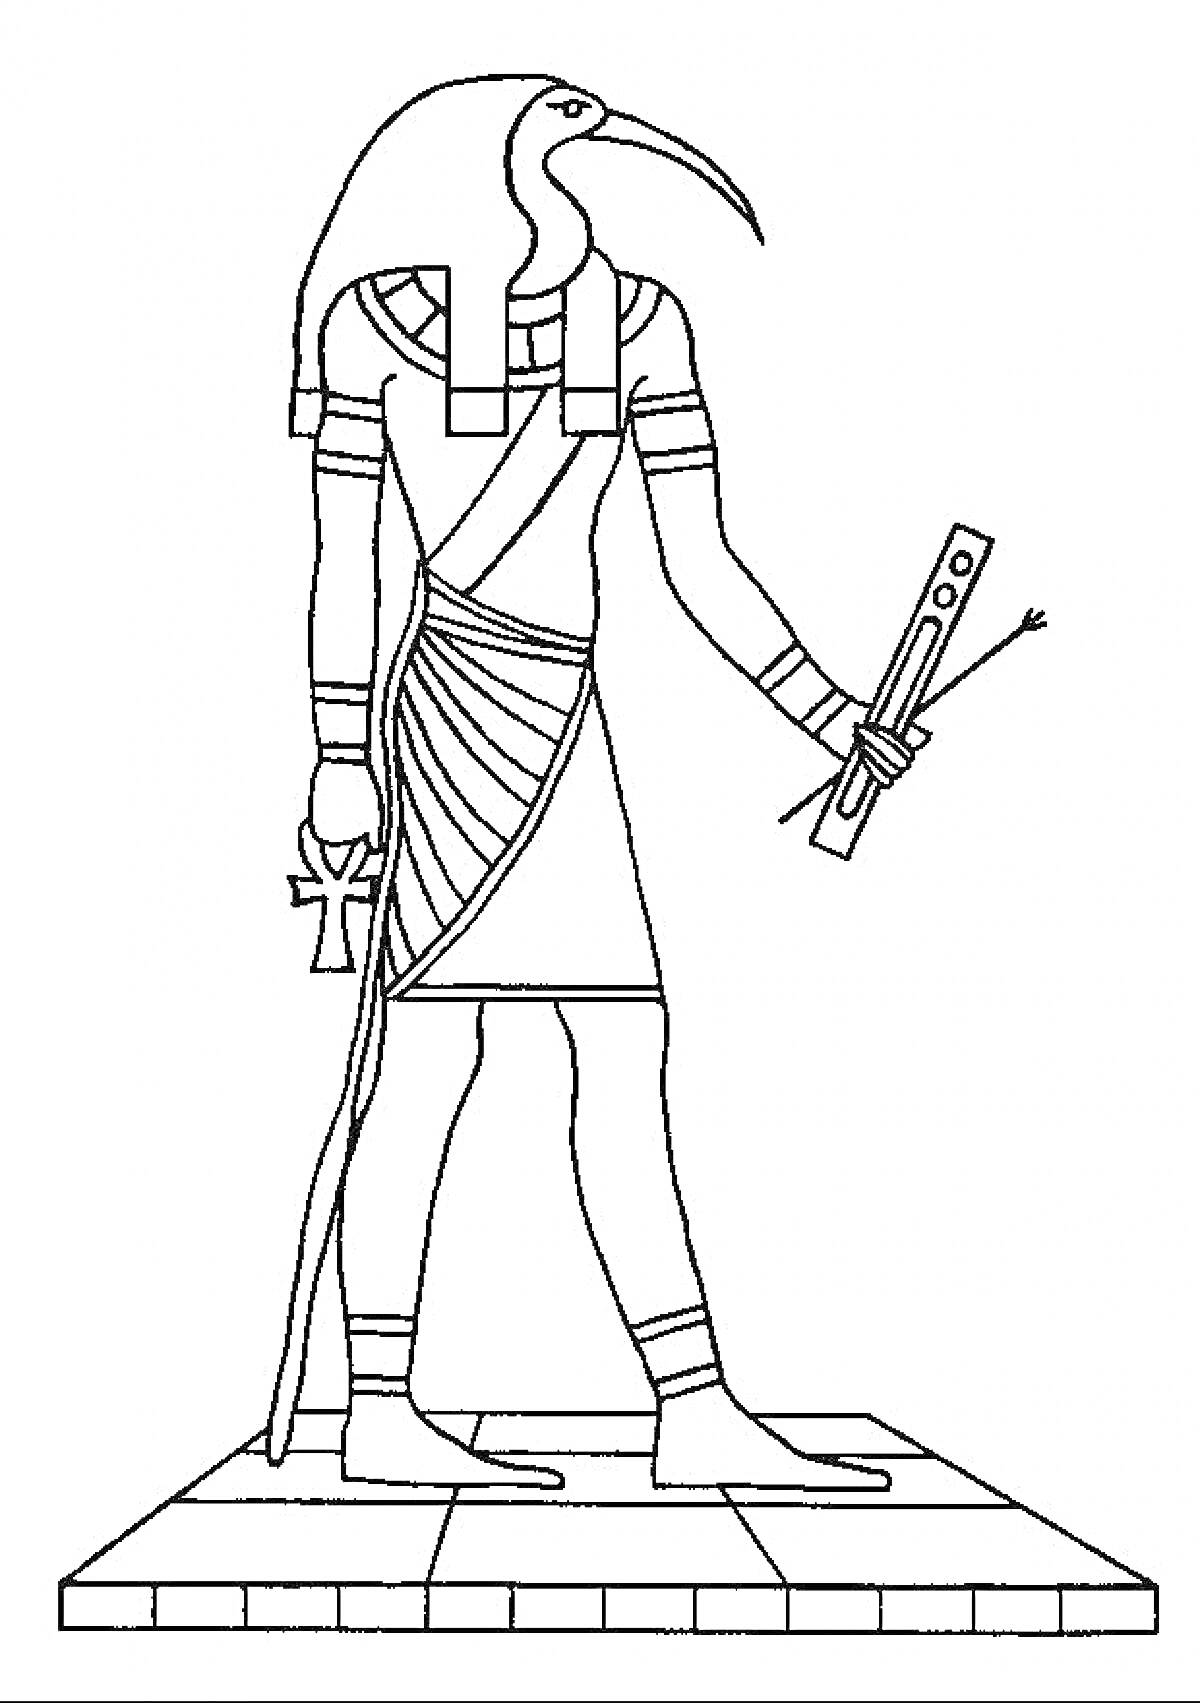 Бог Тот с головой ибиса, древнеегипетское божество с посохом и анкхом, стоящее на платформе